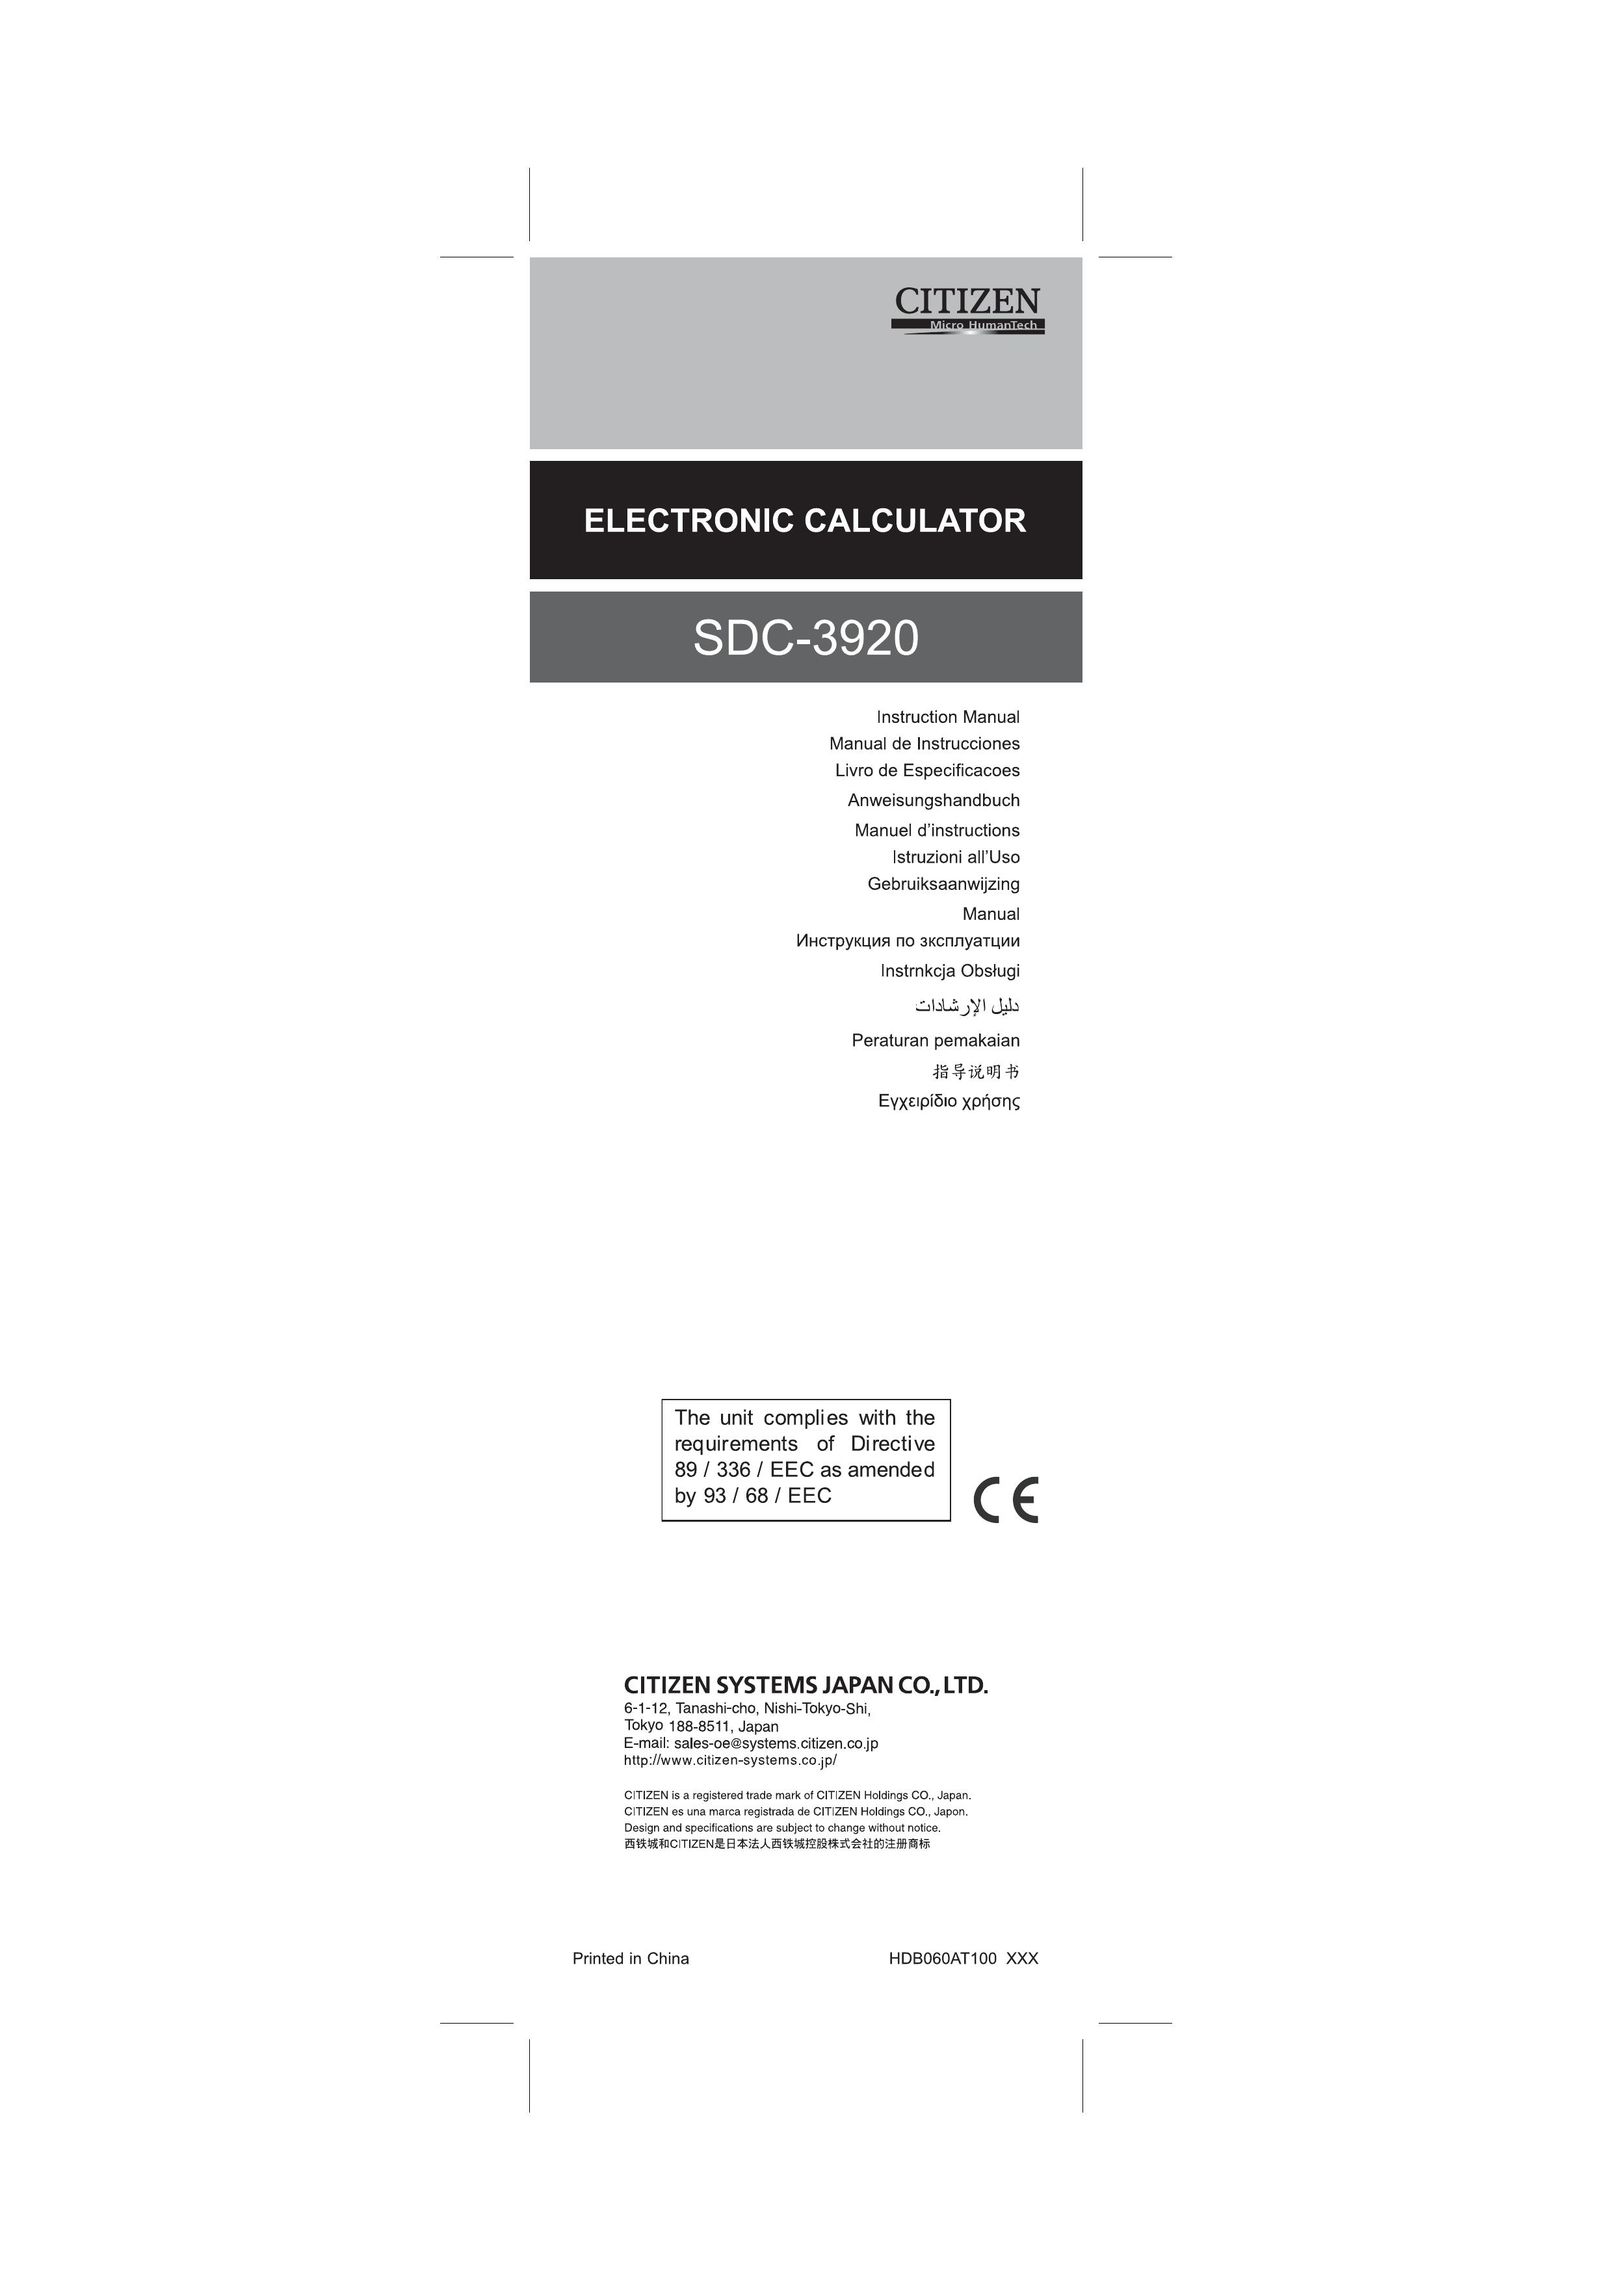 Citizen SDC-3920 Calculator User Manual